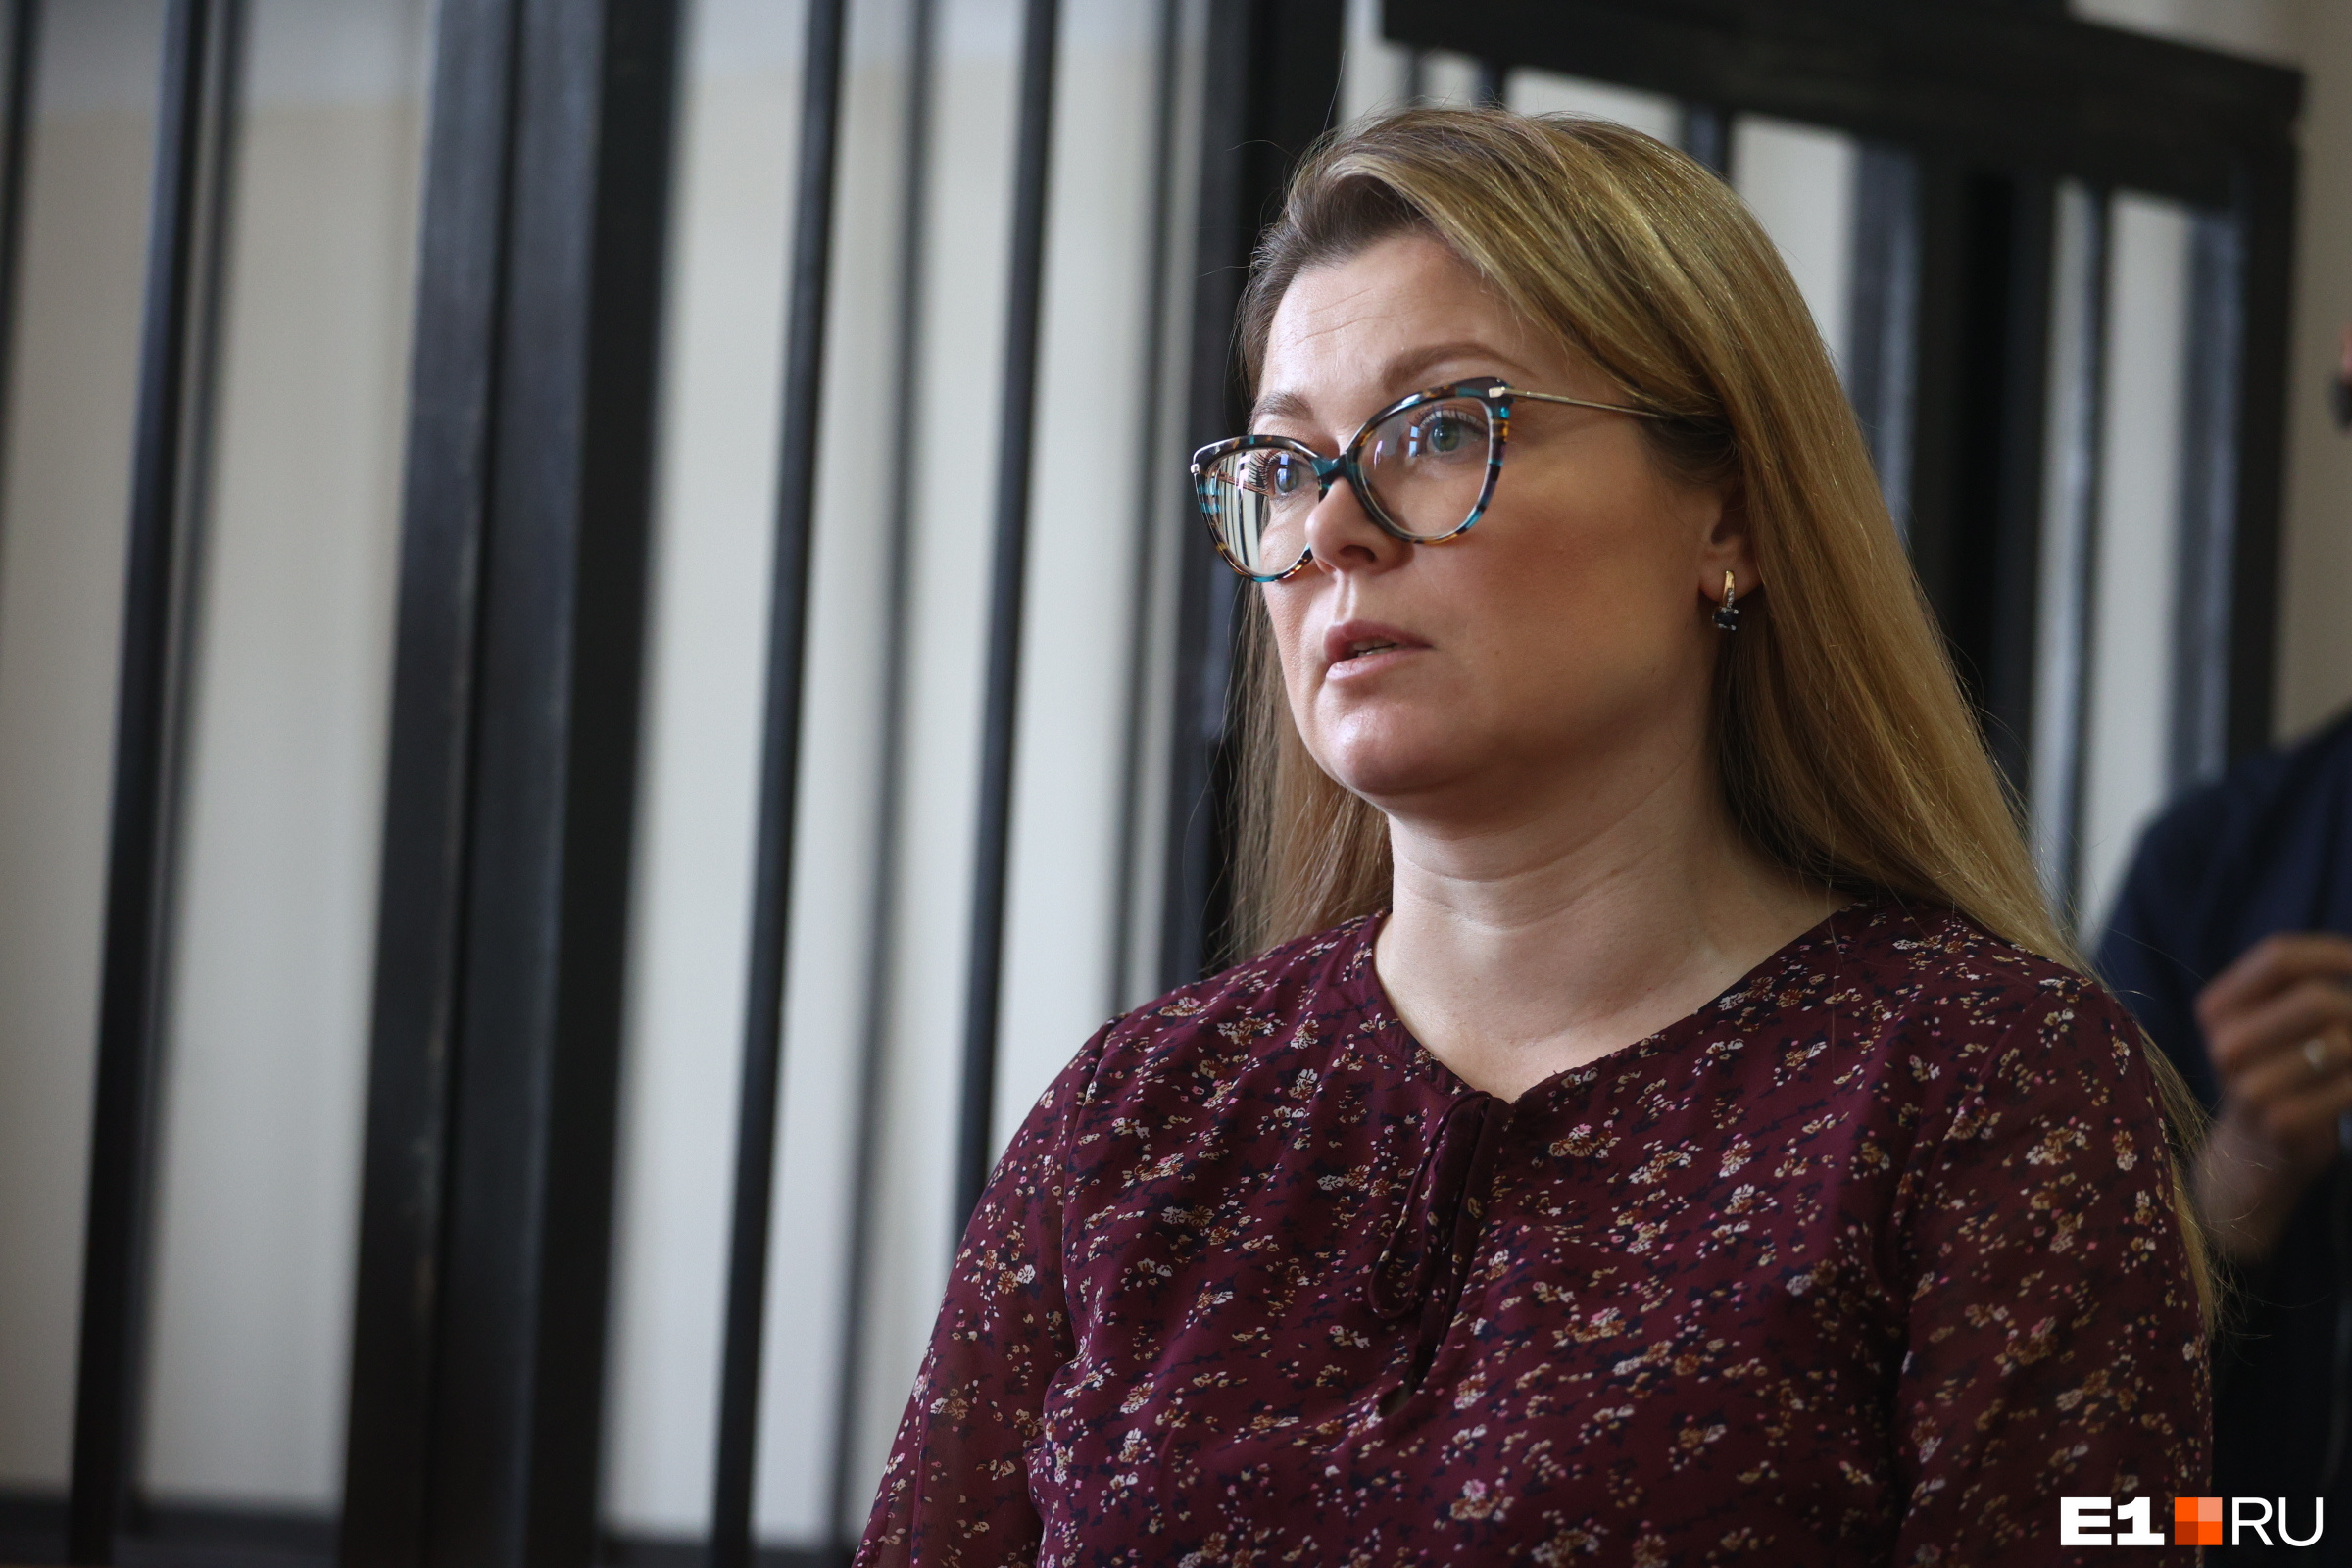 Светлана Косолапова — директор фонда Ройзмана*. Говорит, что обыски в организации стали для нее неожиданностью